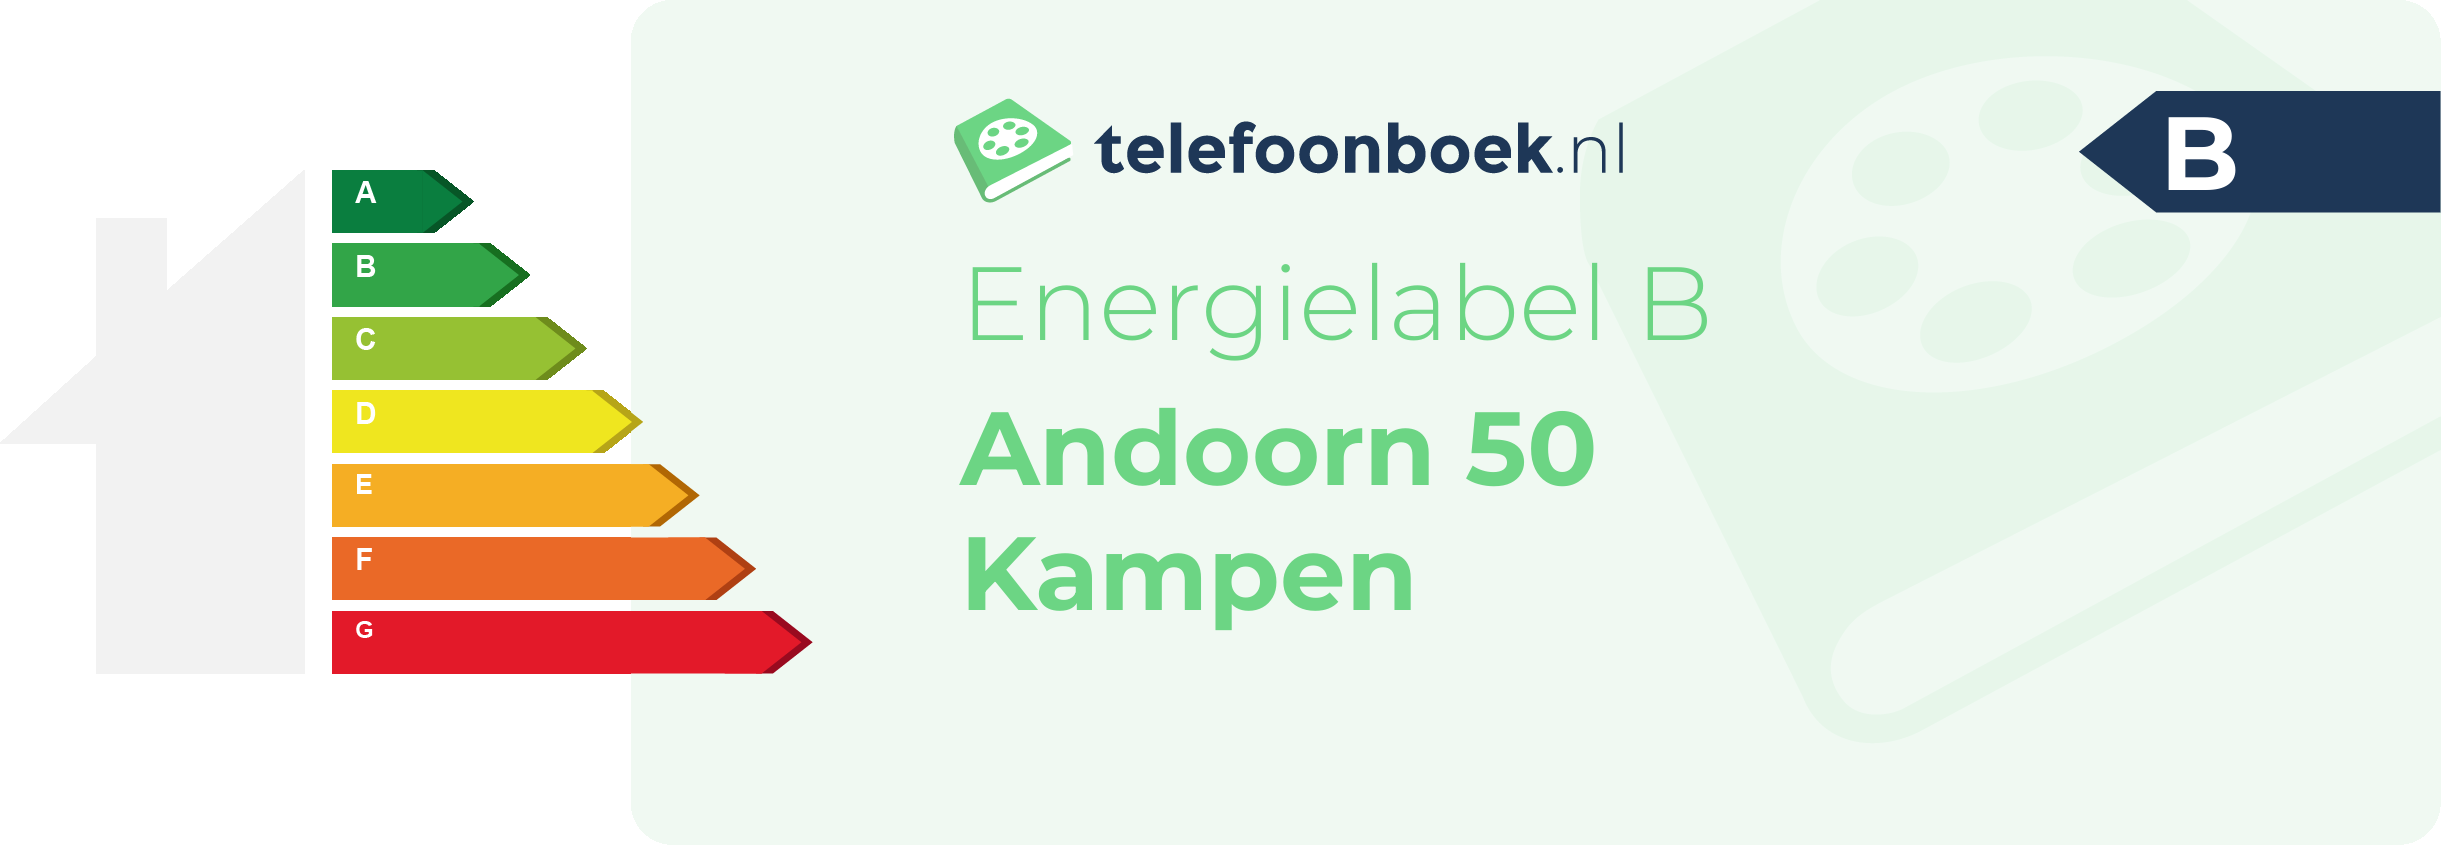 Energielabel Andoorn 50 Kampen